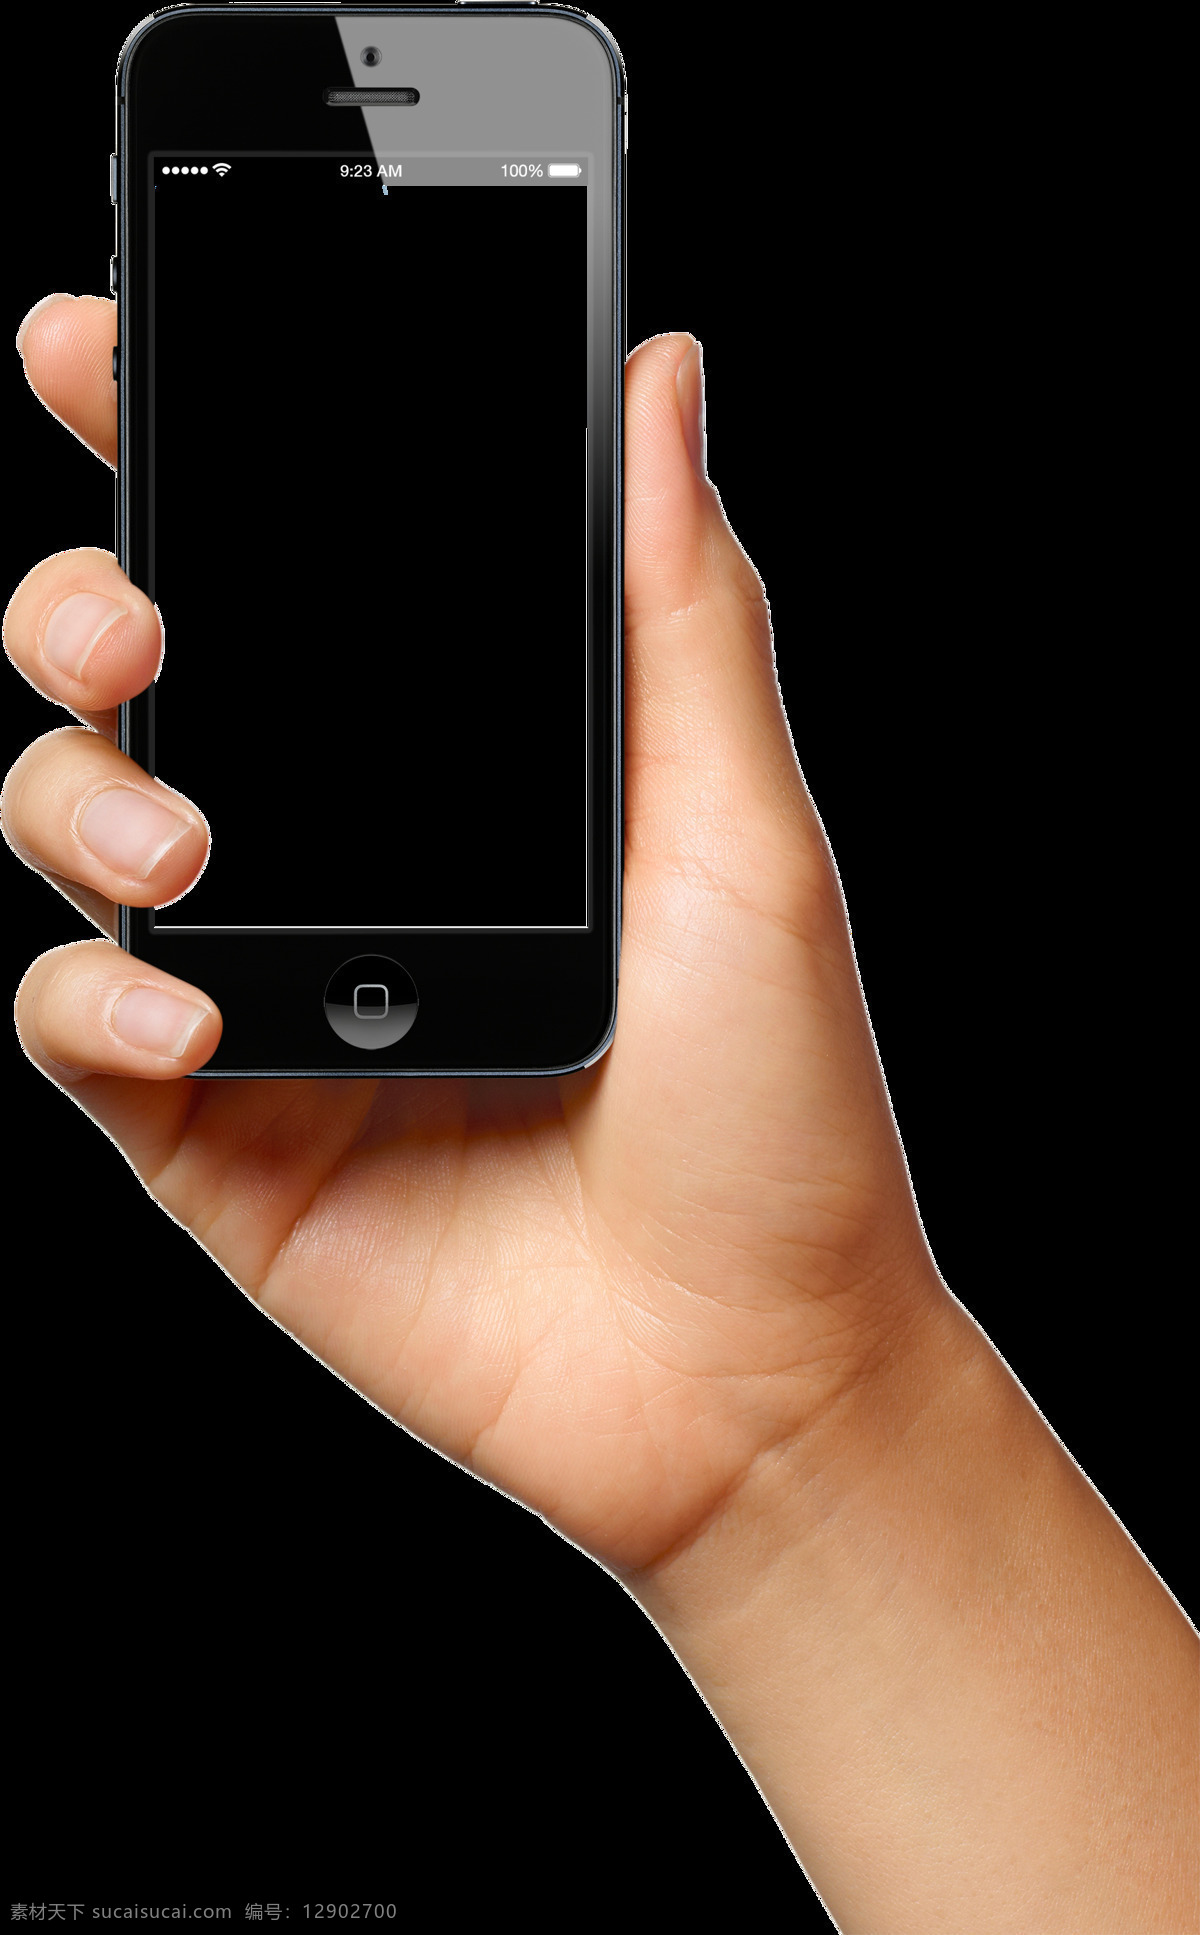 手持 智能 手机图片 免 抠 透明 图 层 手机图片素材 苹果手机图片 4g智能手机 透明智能手机 智能手机样机 智能手机贴图 安卓智能手机 苹果智能手机 安卓手机 苹果手机